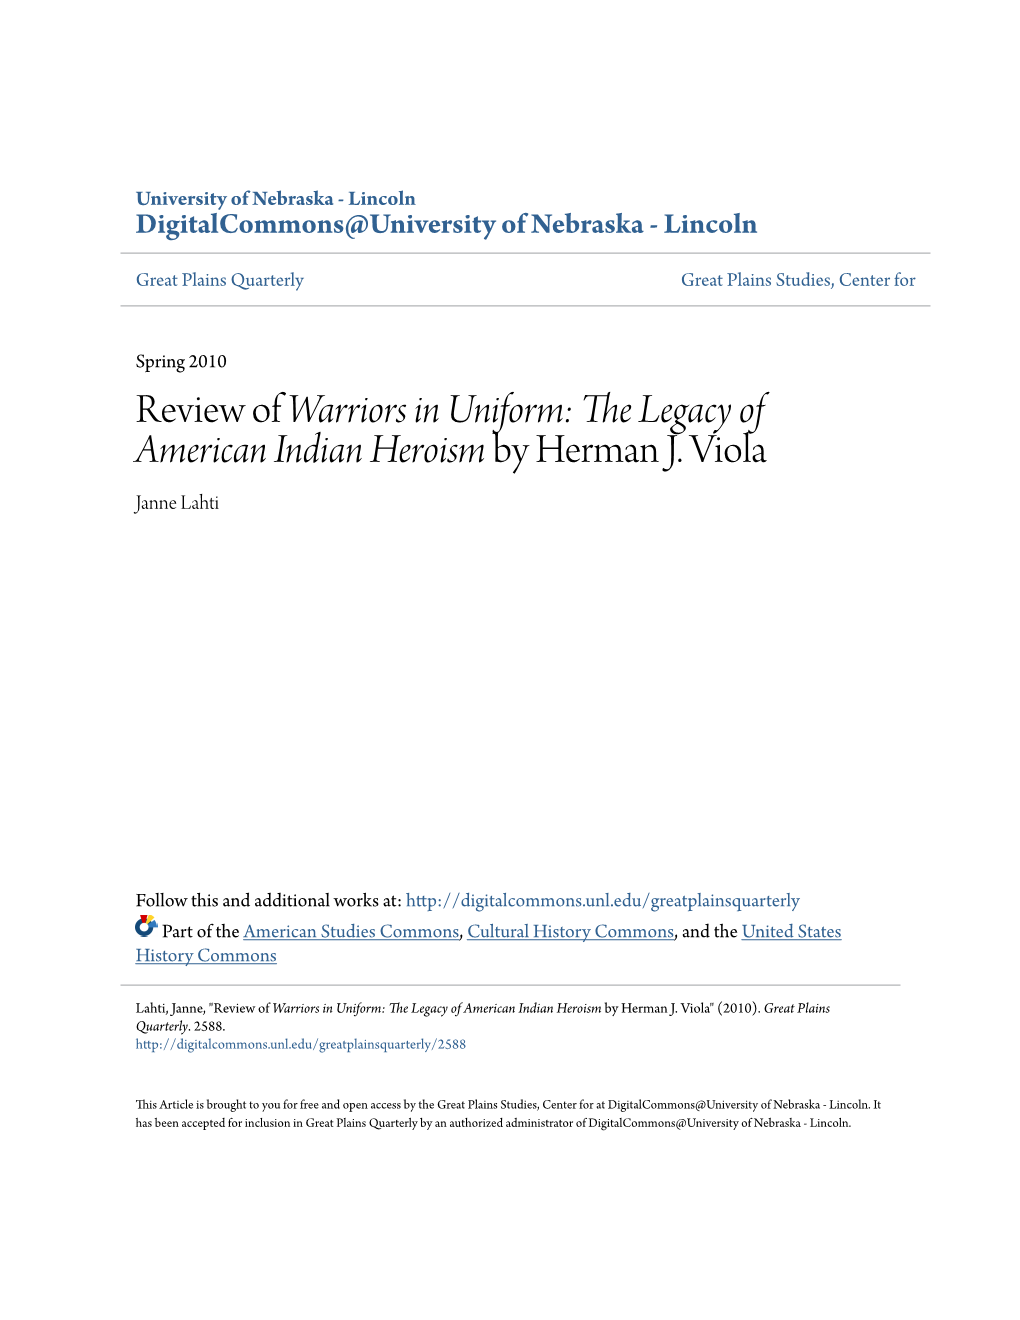 The Legacy of American Indian Heroism by Herman J. Viola Janne Lahti